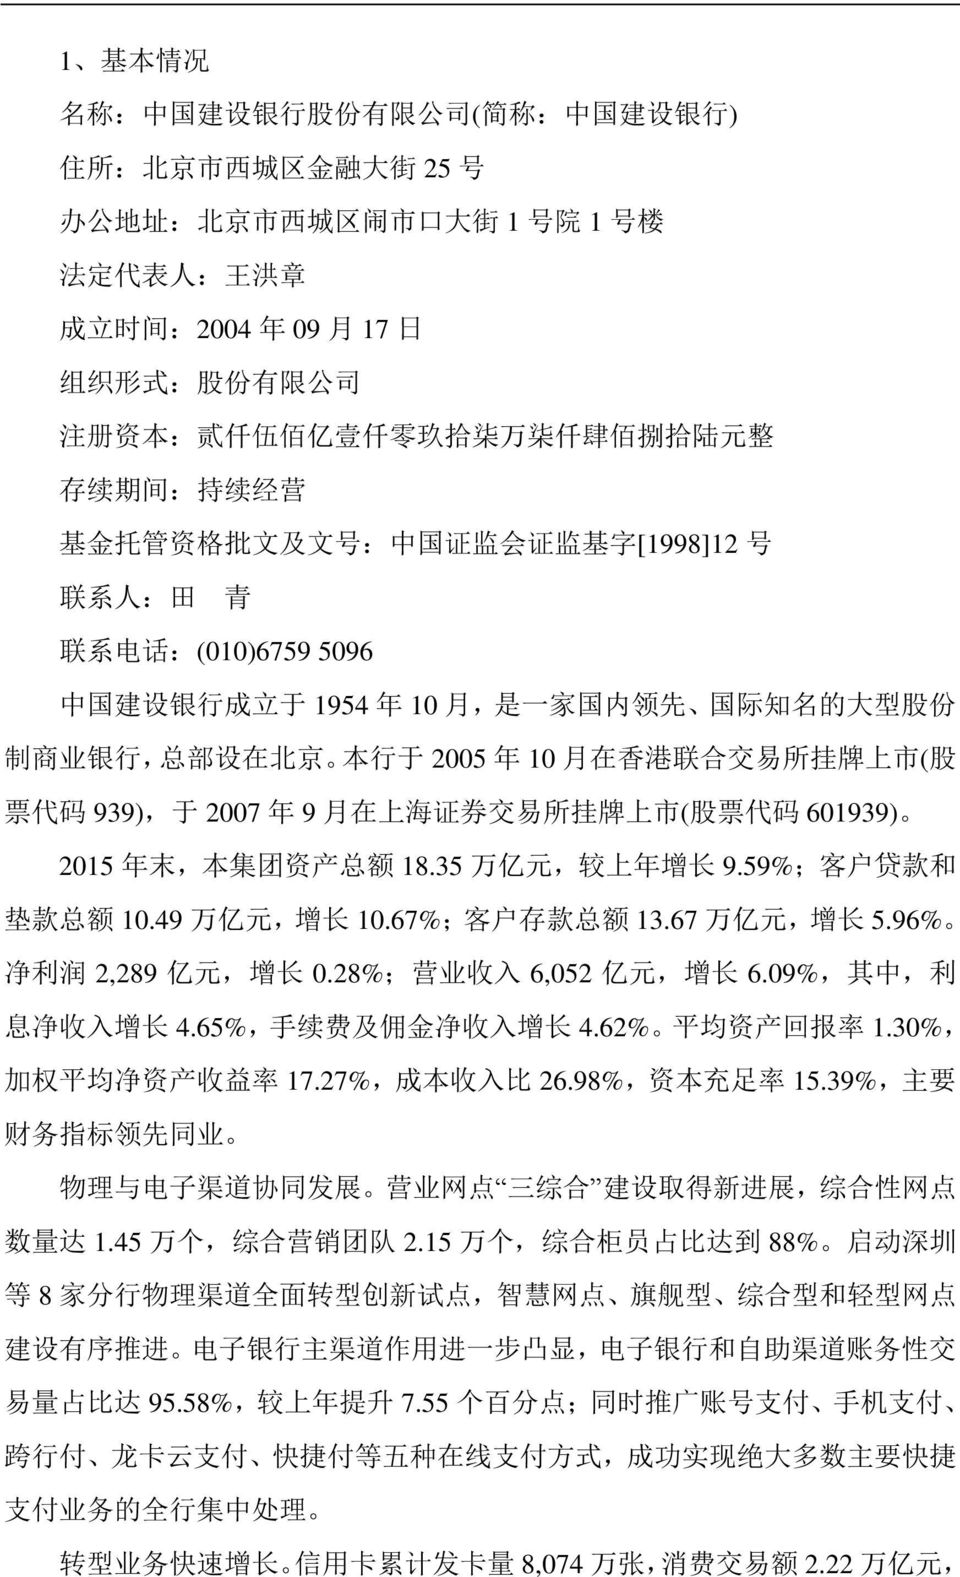 国 内 领 先 国 际 知 名 的 大 型 股 份 制 商 业 银 行, 总 部 设 在 北 京 本 行 于 2005 年 10 月 在 香 港 联 合 交 易 所 挂 牌 上 市 ( 股 票 代 码 939), 于 2007 年 9 月 在 上 海 证 券 交 易 所 挂 牌 上 市 ( 股 票 代 码 601939) 2015 年 末, 本 集 团 资 产 总 额 18.